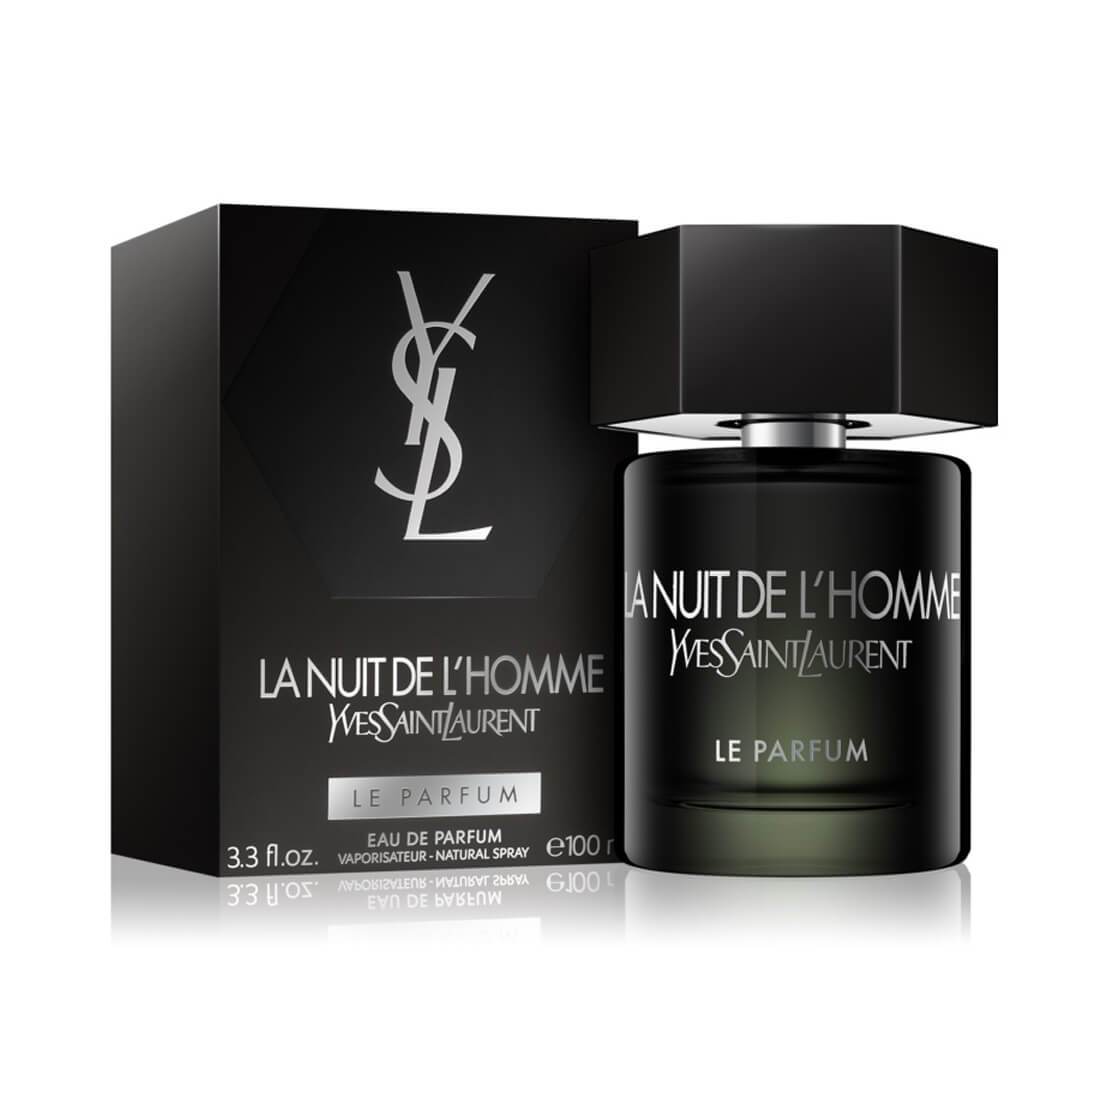 Yves Saint Laurent La Nuit de L'Homme Le Parfum EDP Perfume - 100ml